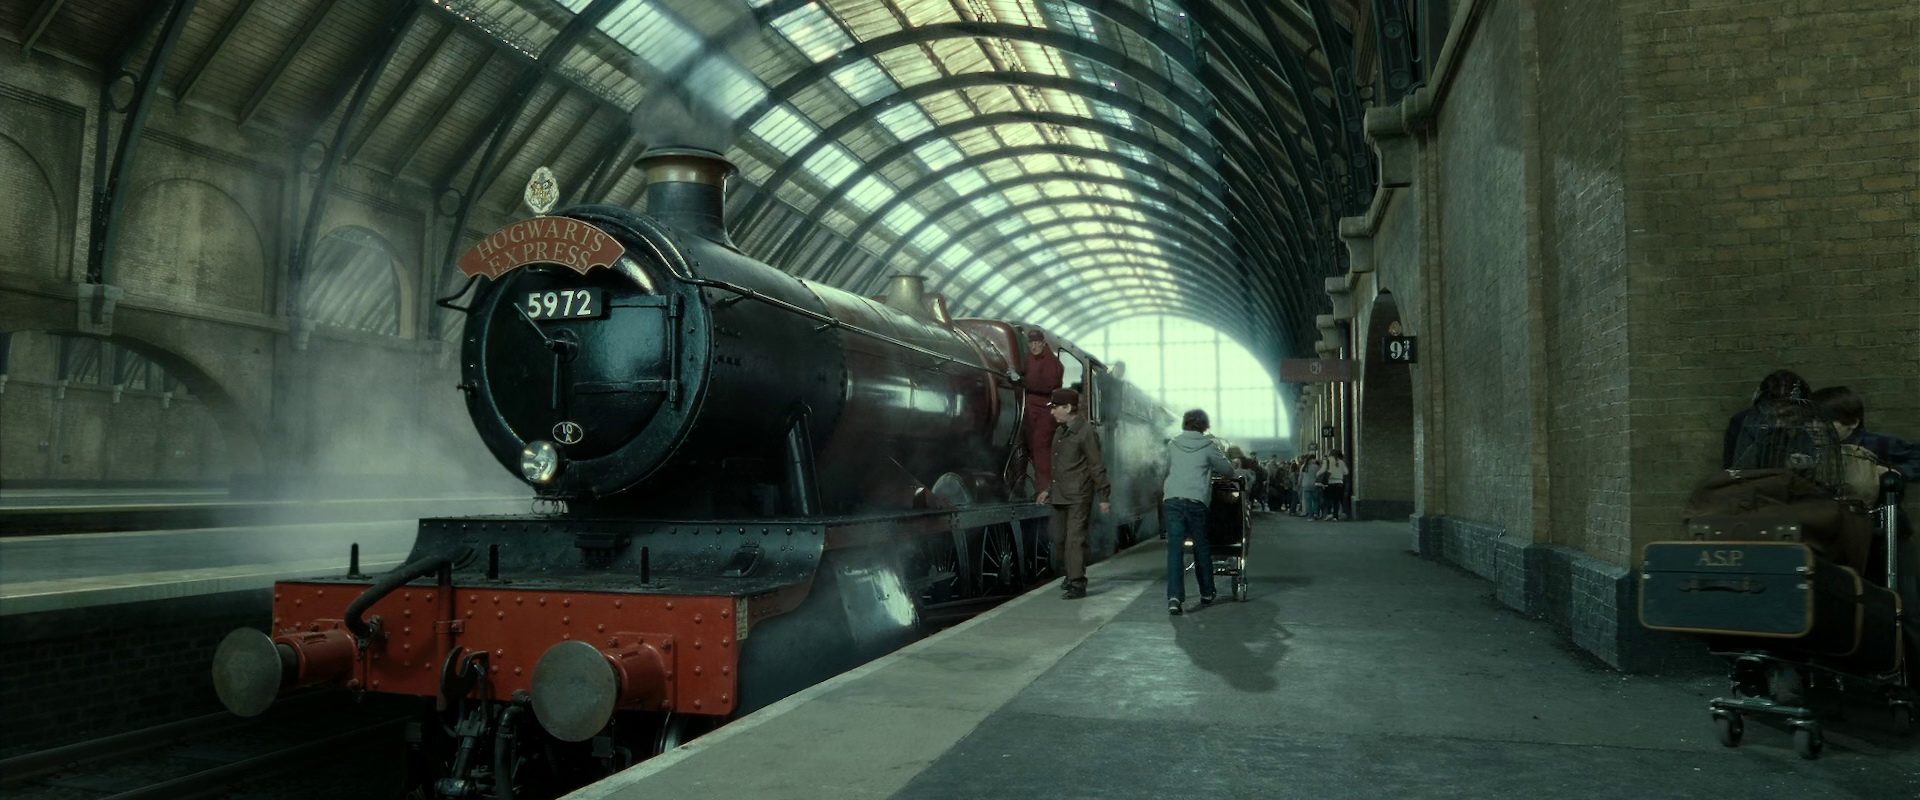 Harry potter thomas the train